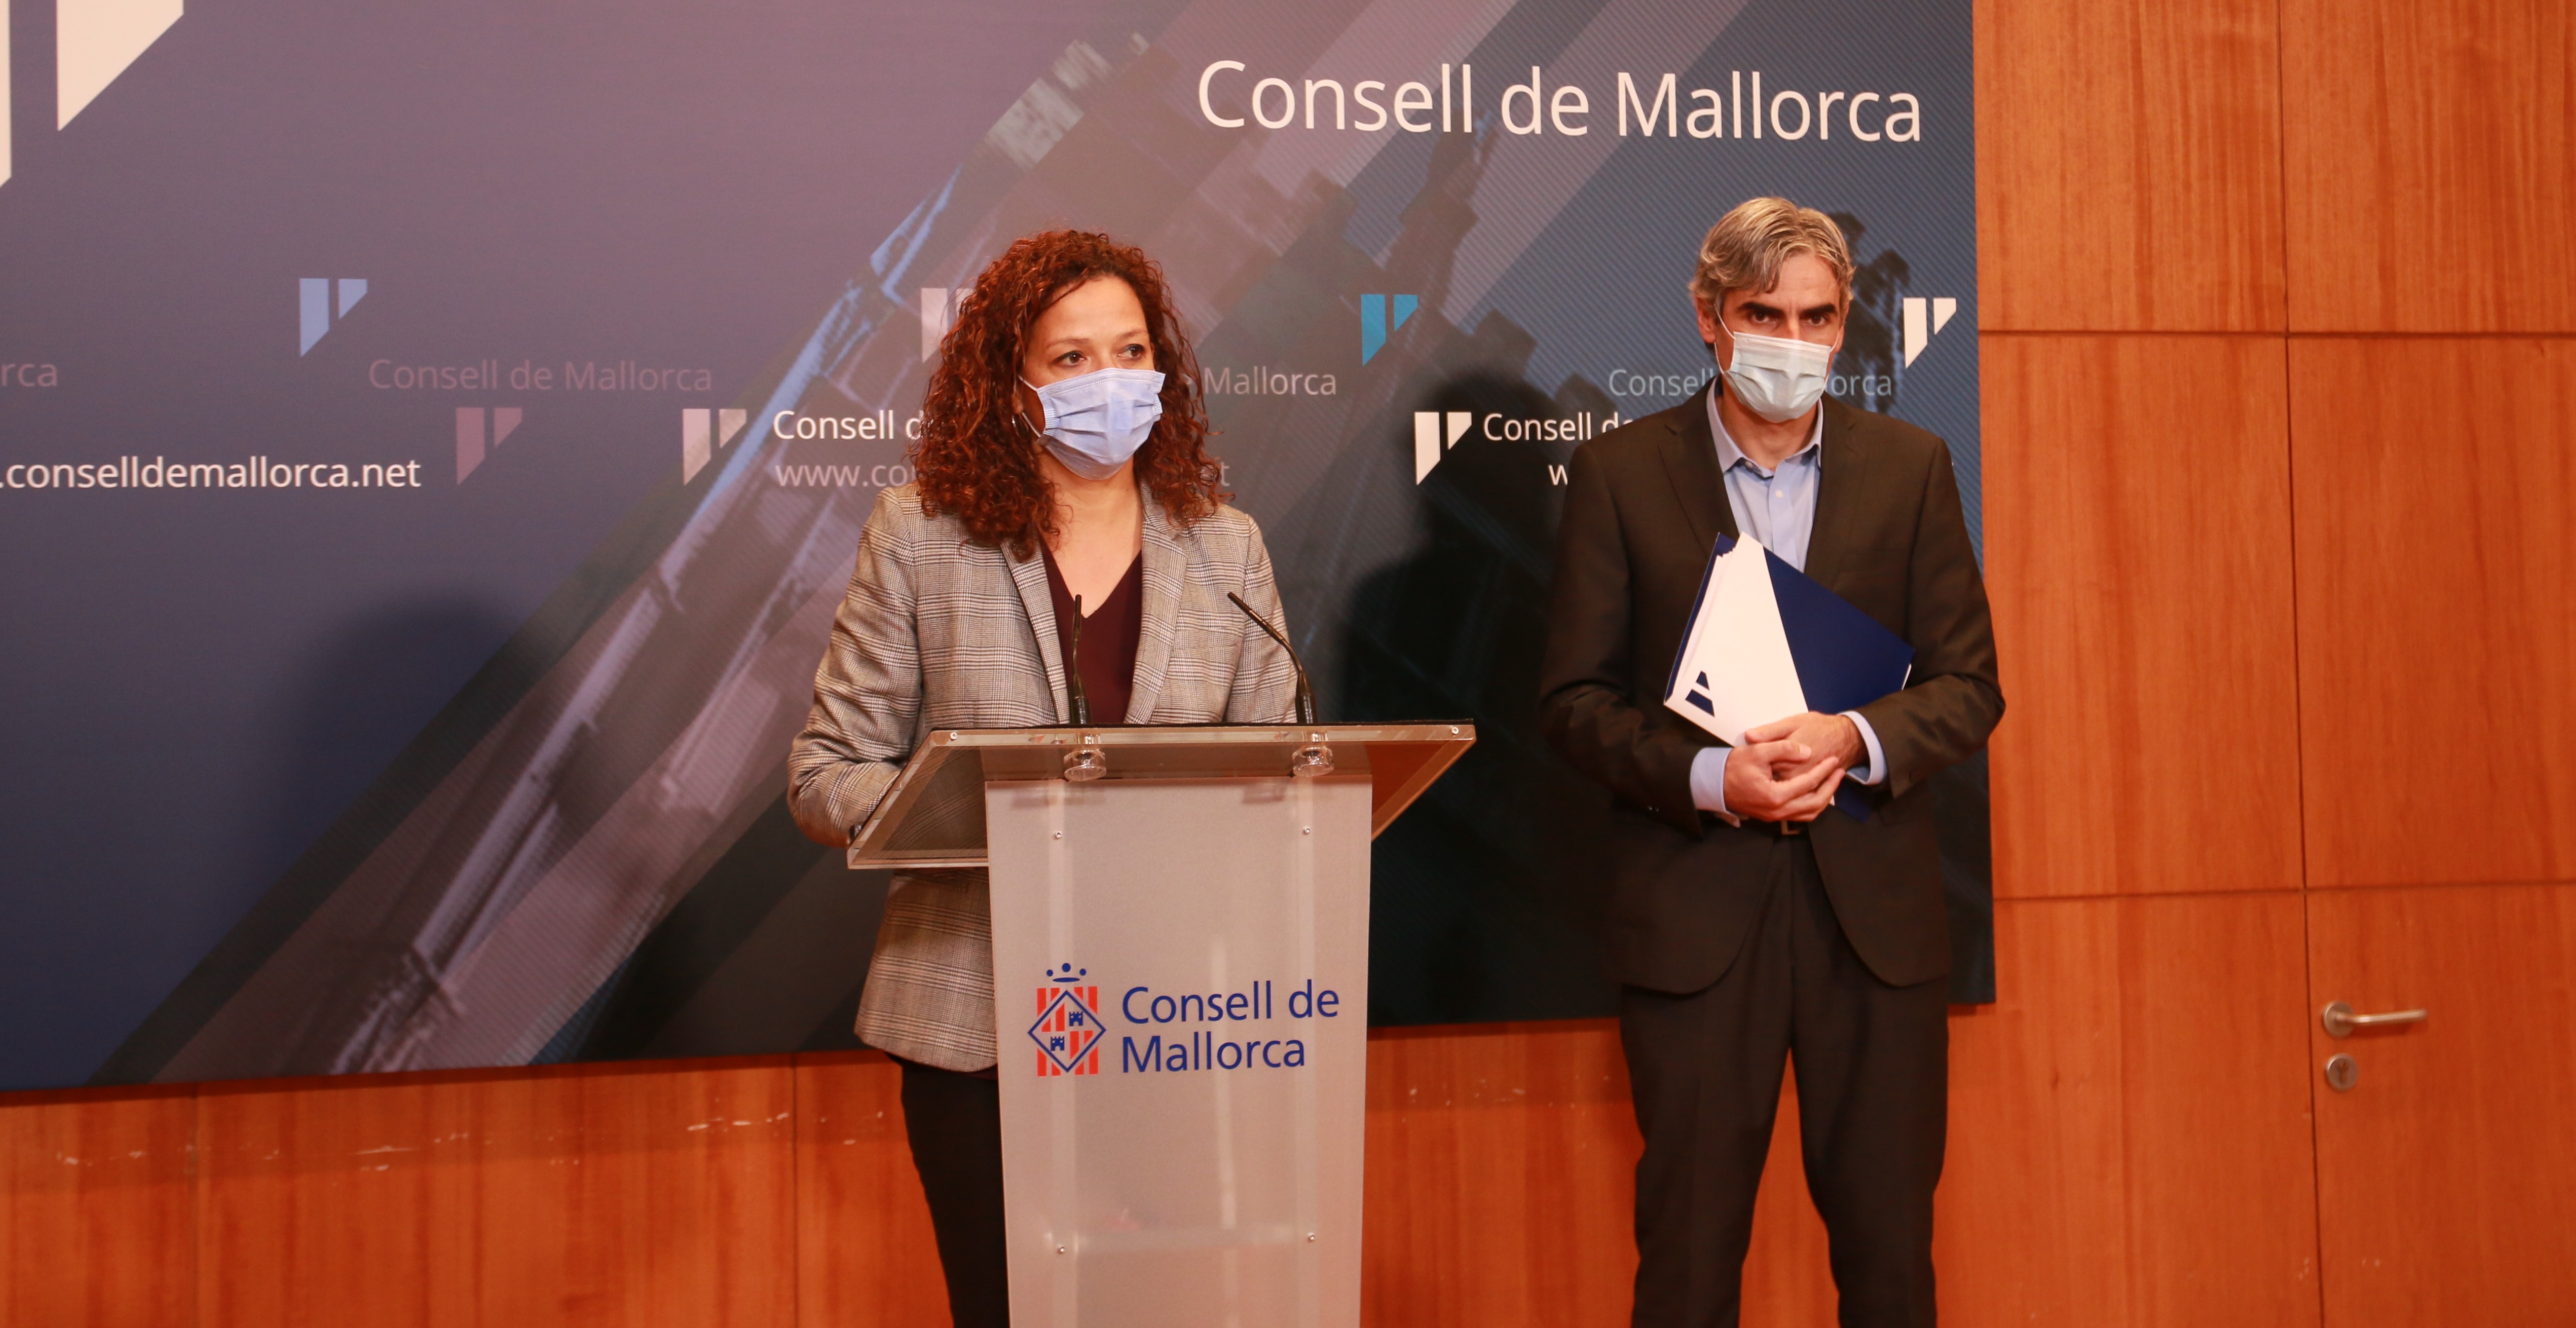 El Consell de Mallorca presenta los presupuestos para 2021.